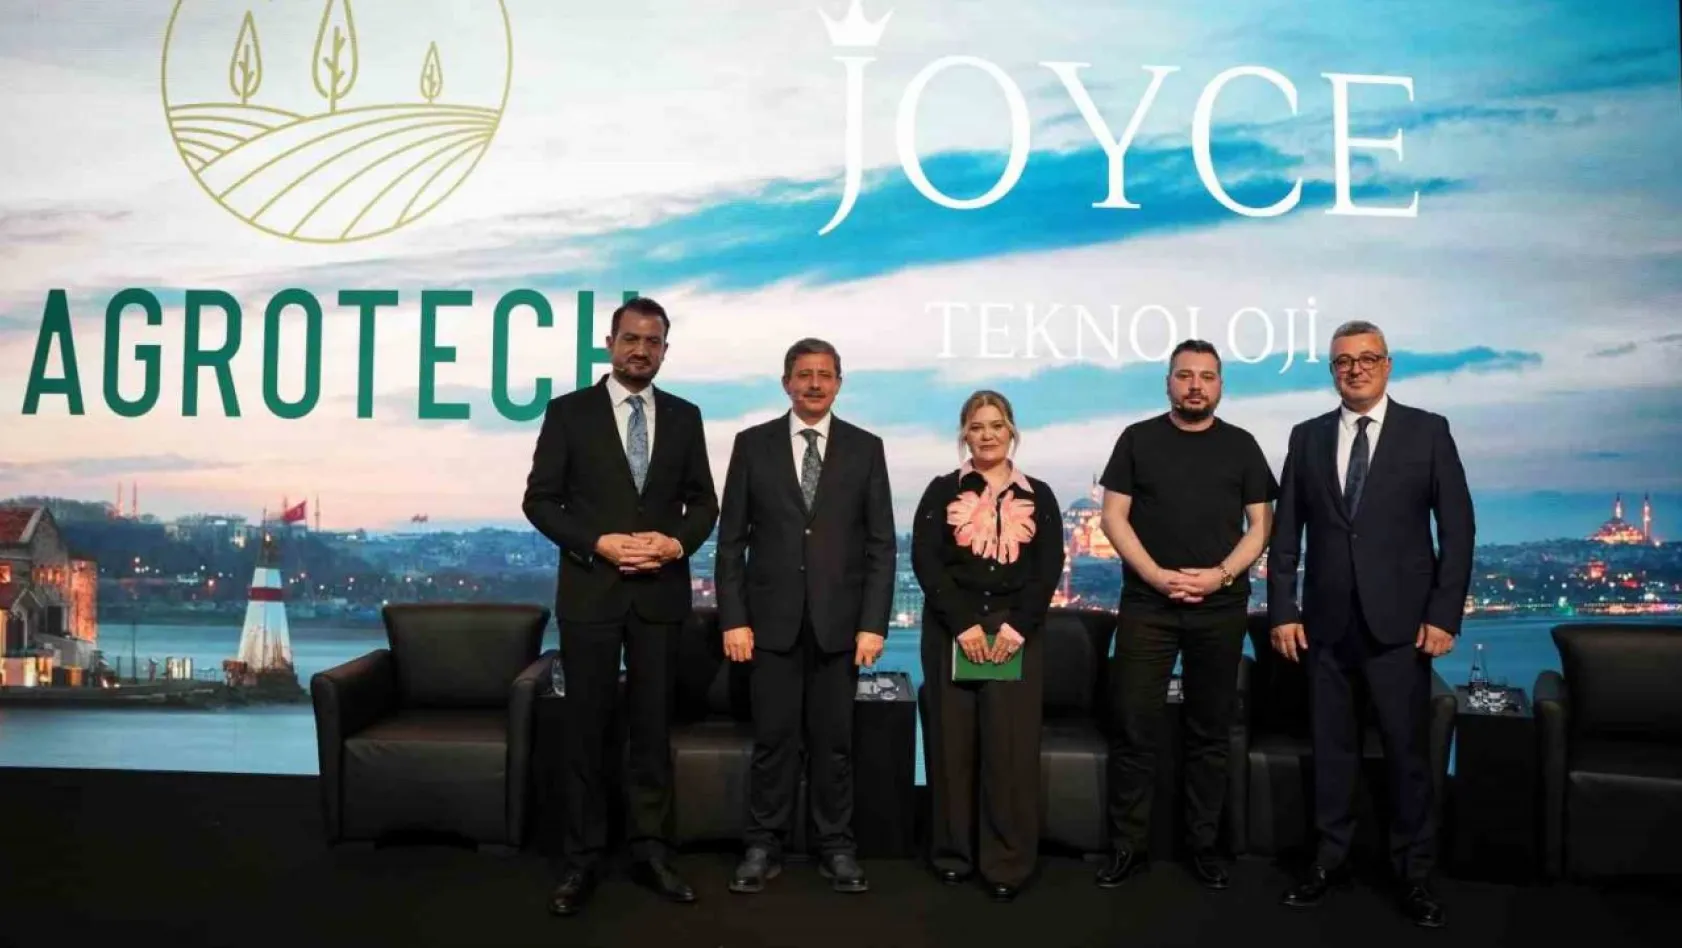 Agrotech ve Joyce Teknoloji'den Türkiye'nin elektrikli araç sektöründe dev adım